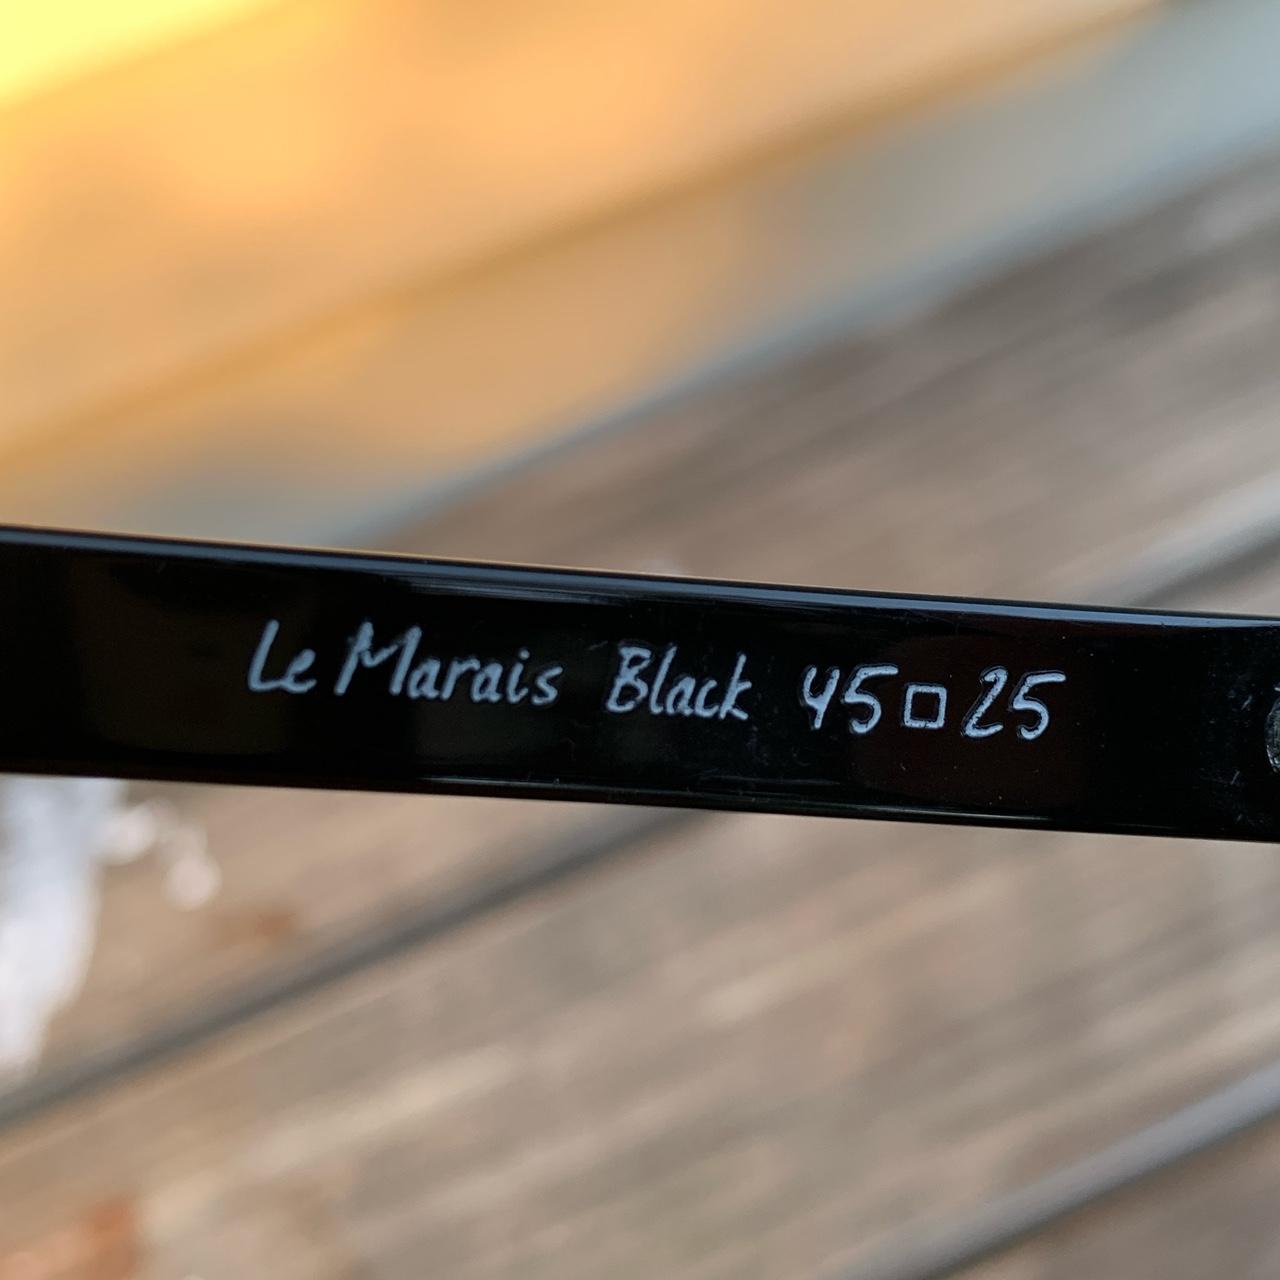 Product Image 4 - Authentic Black AHLEM Sunglasses

Le Marais